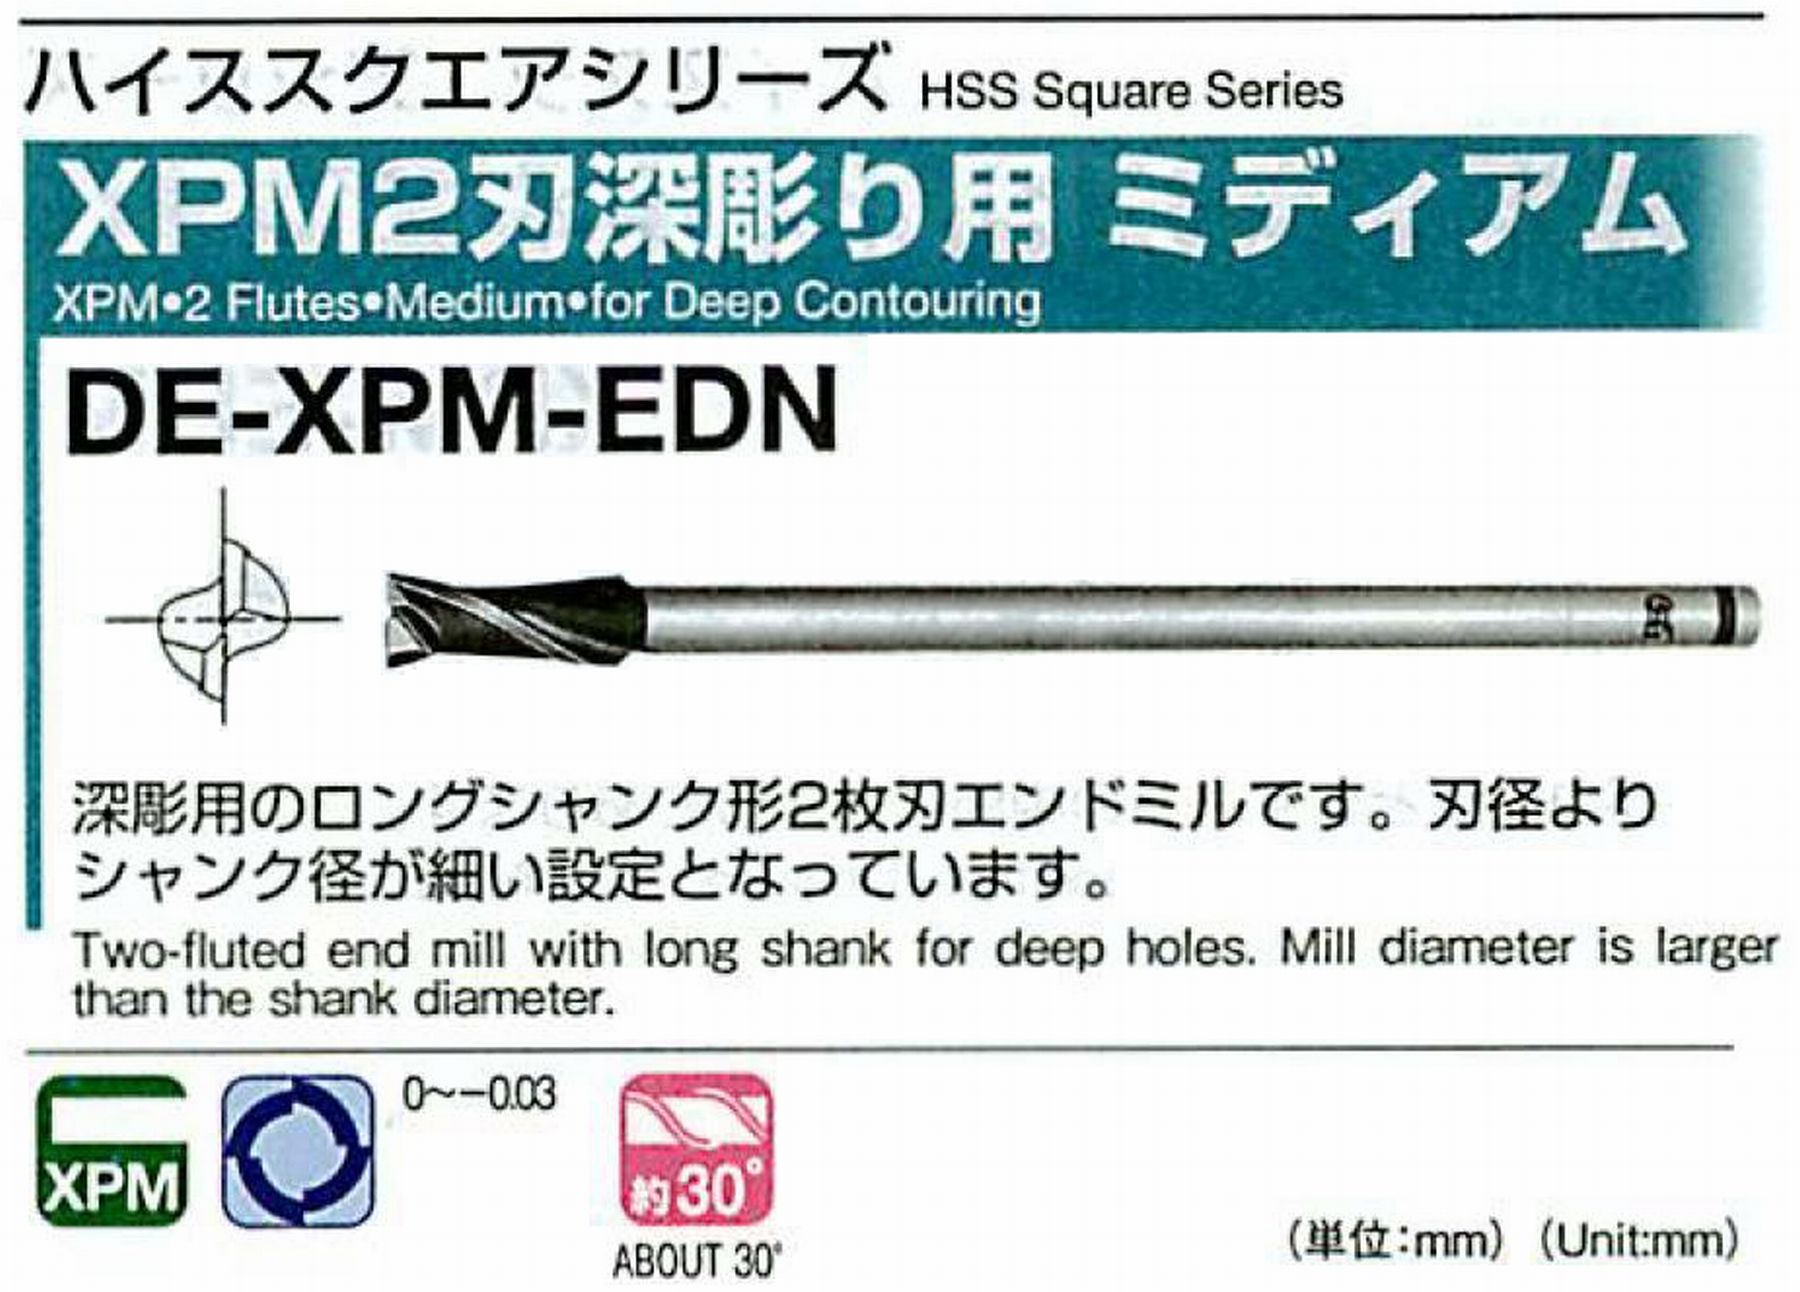 オーエスジー/OSG XPM2刃深彫り用 ミディアム DE-XPM-EDN 外径20 全長180 刃長45 シャンク径16mm